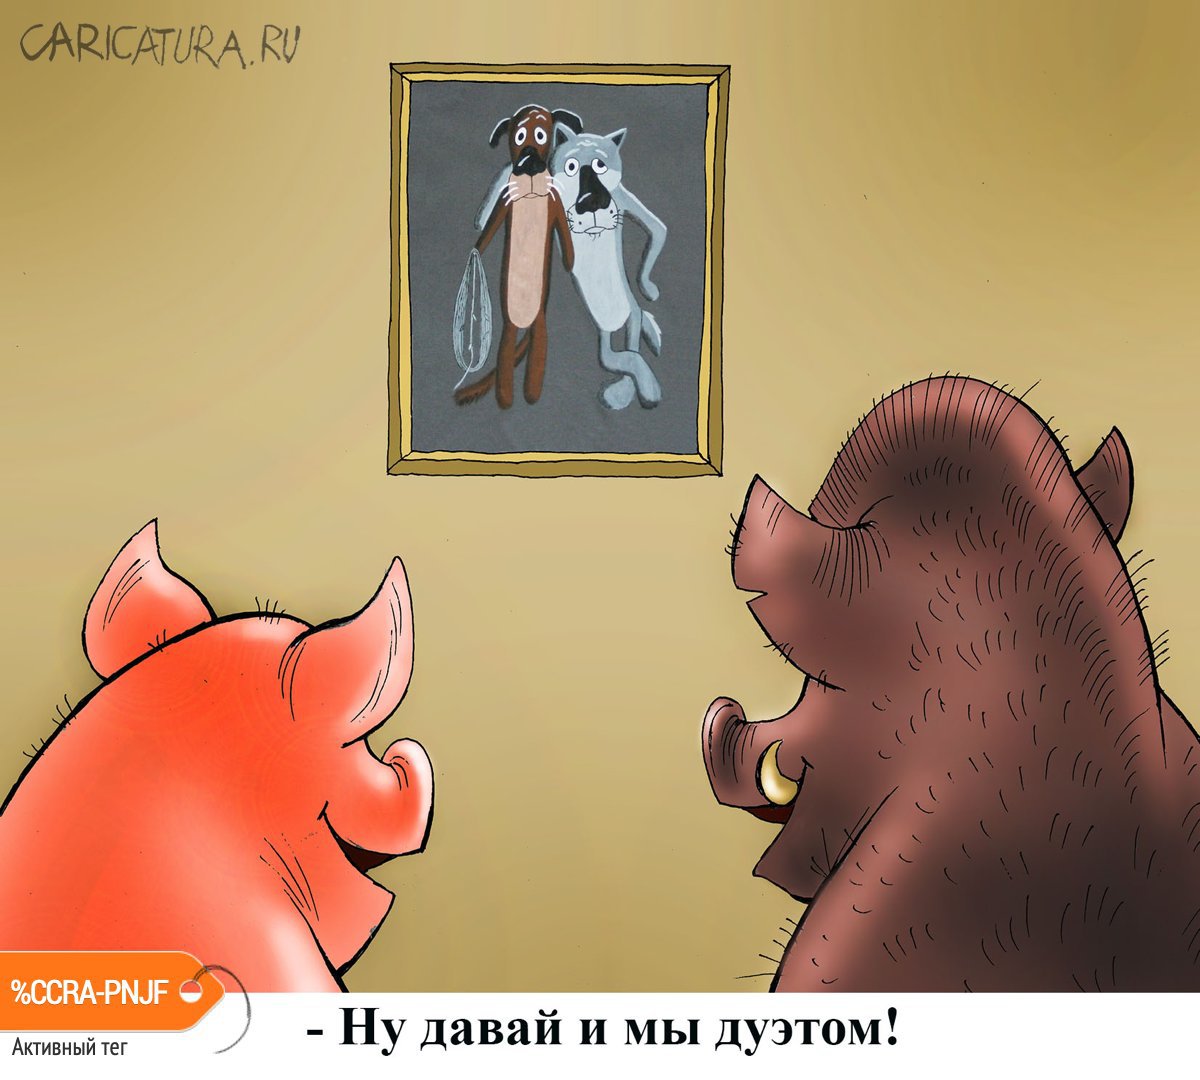 Карикатура "Новогодний тандем", Александр Попов